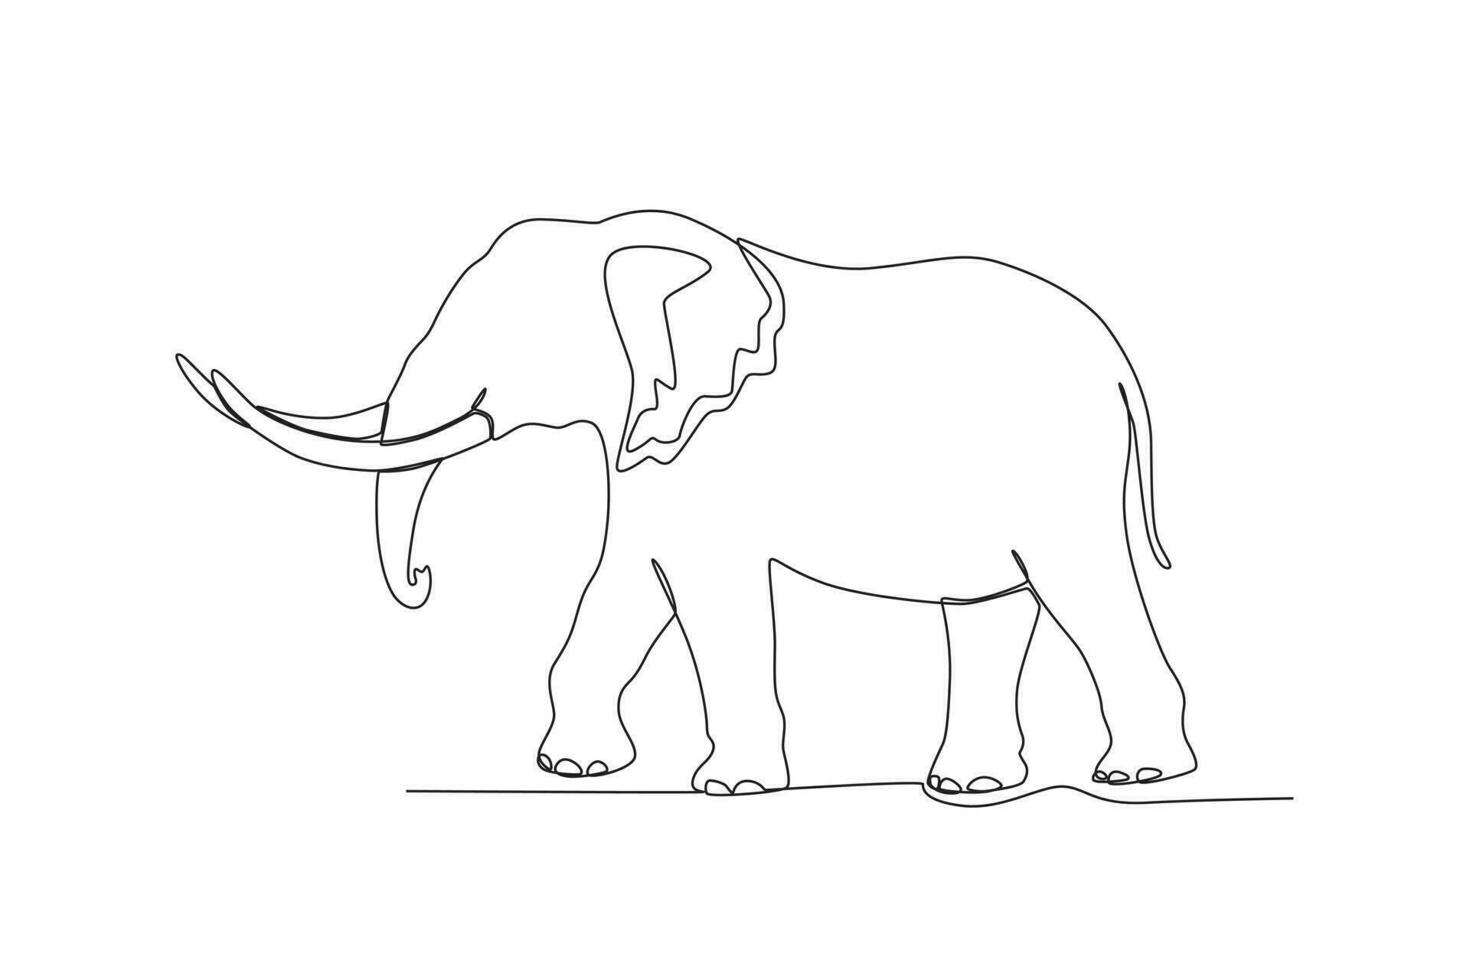 Célibataire un ligne dessin de une l'éléphant. continu ligne dessiner conception graphique vecteur illustration.